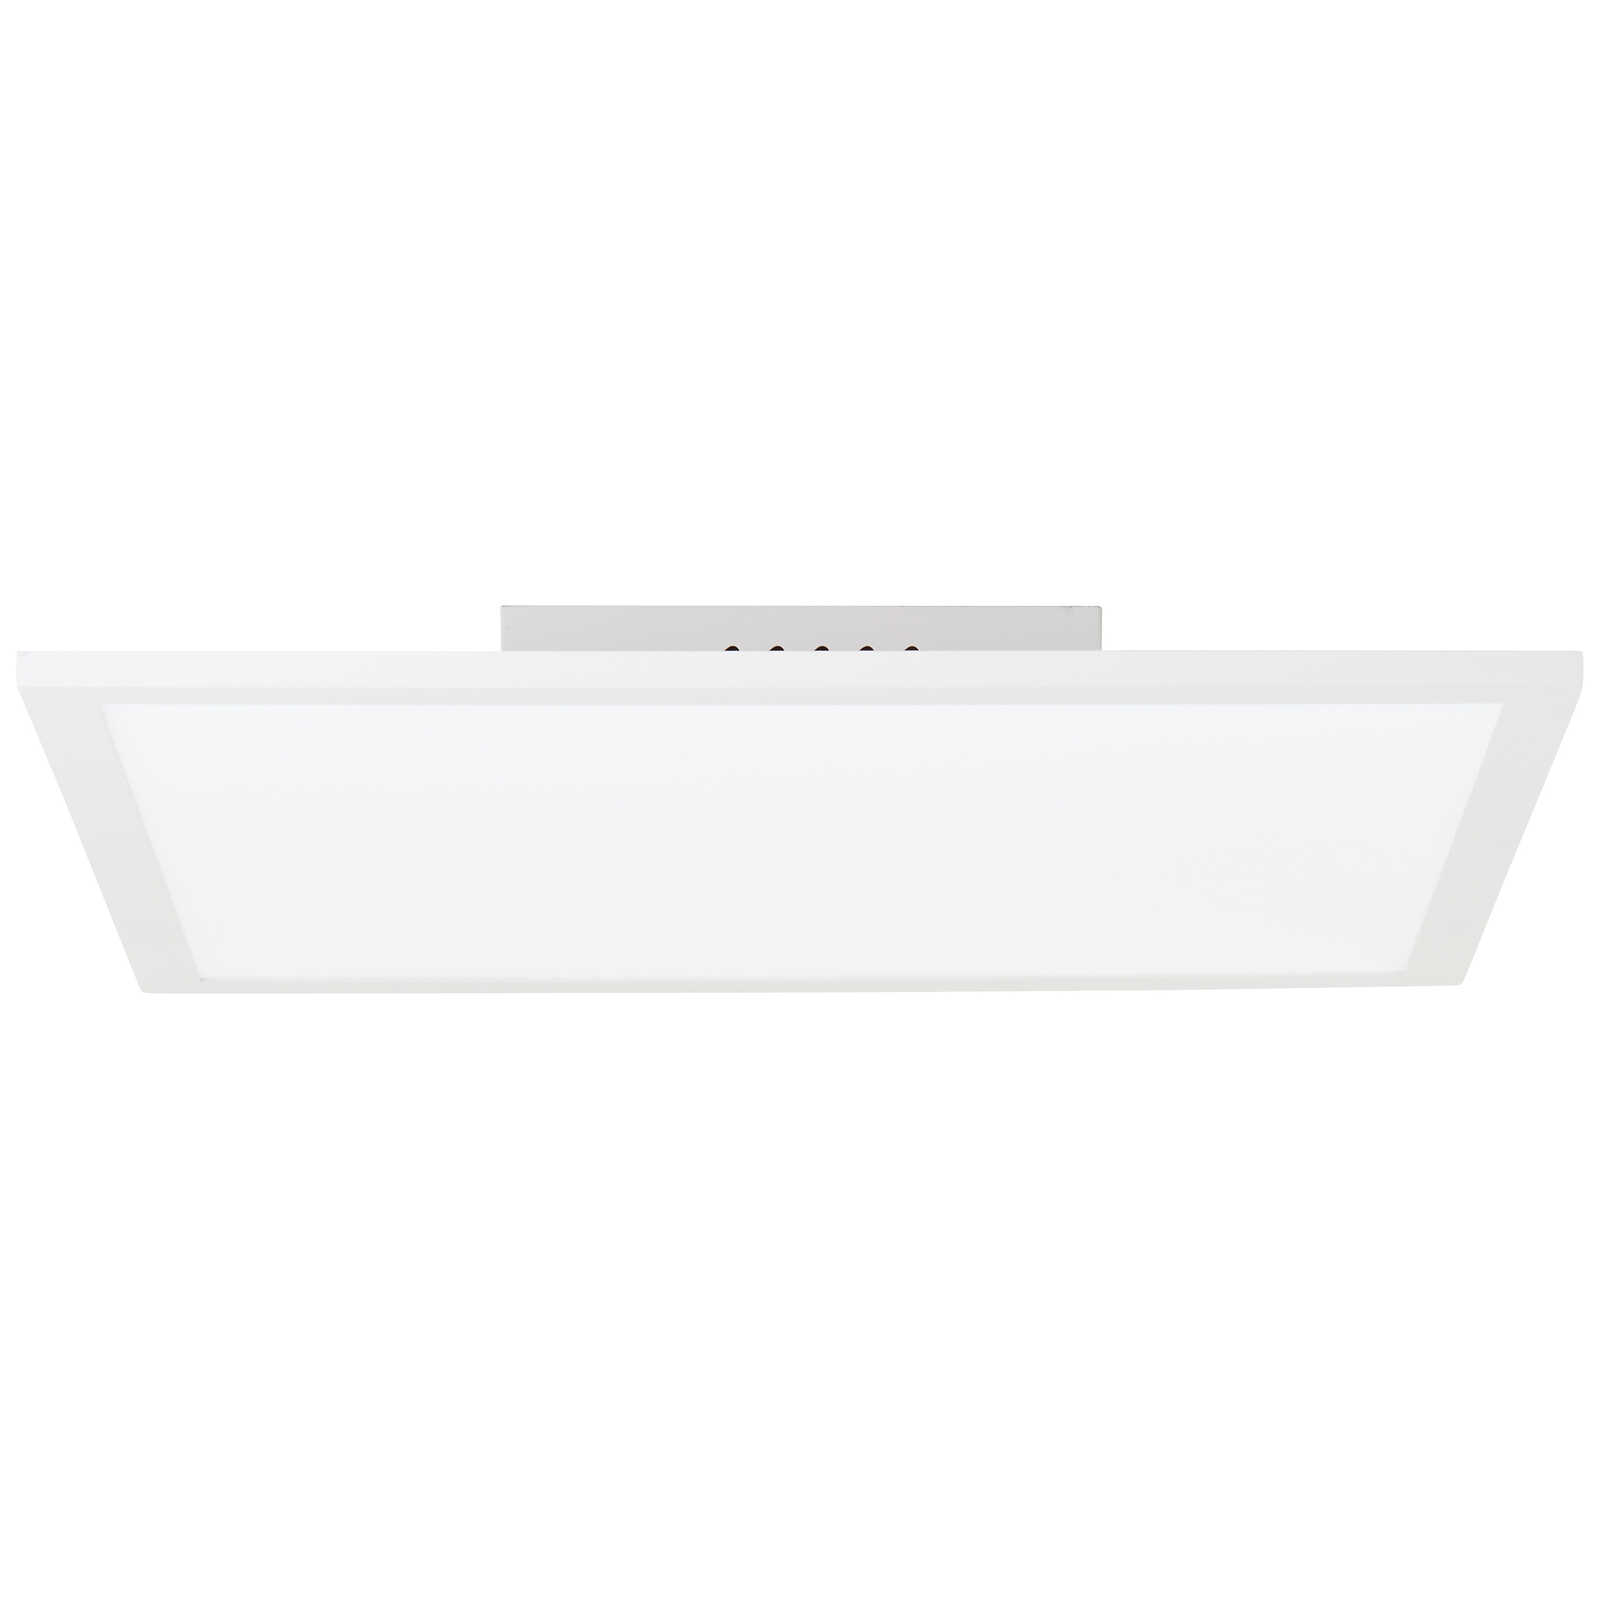             Plastic ceiling light - Jolien 1 - White
        